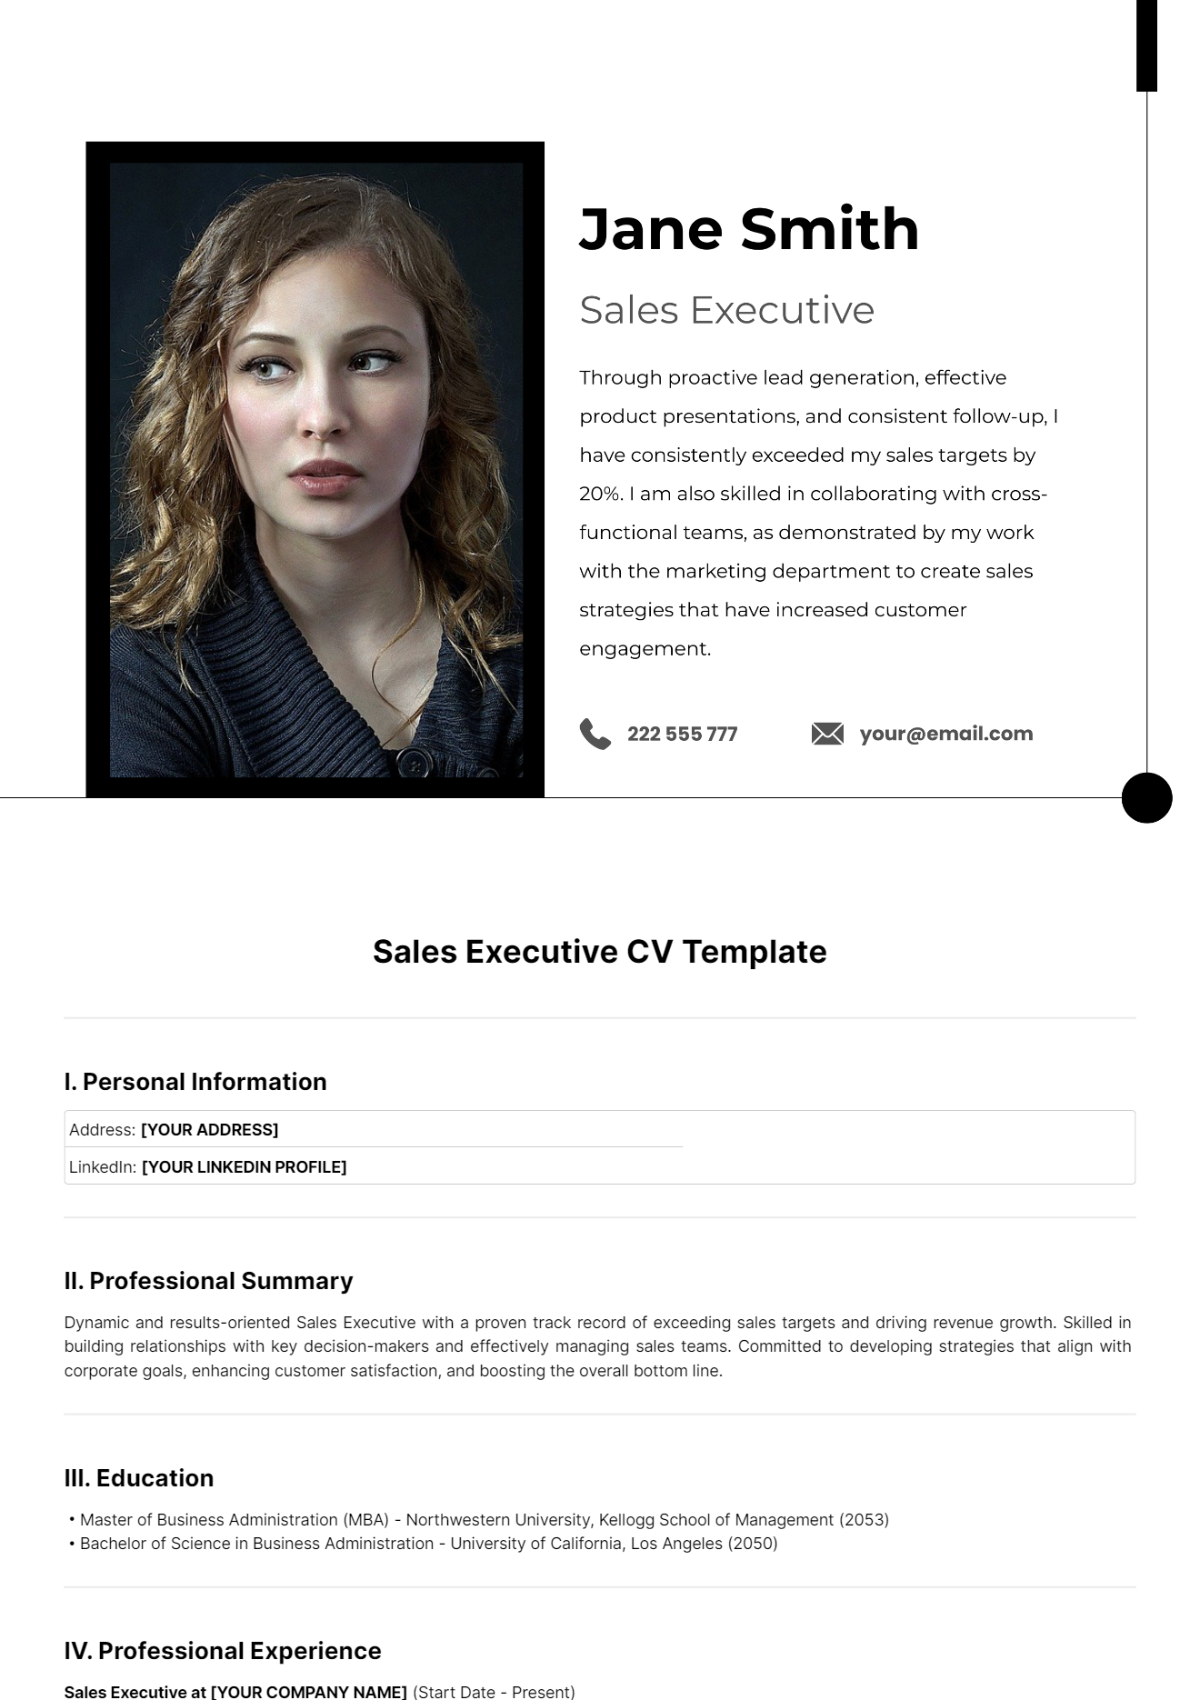 Sales Executive CV Template